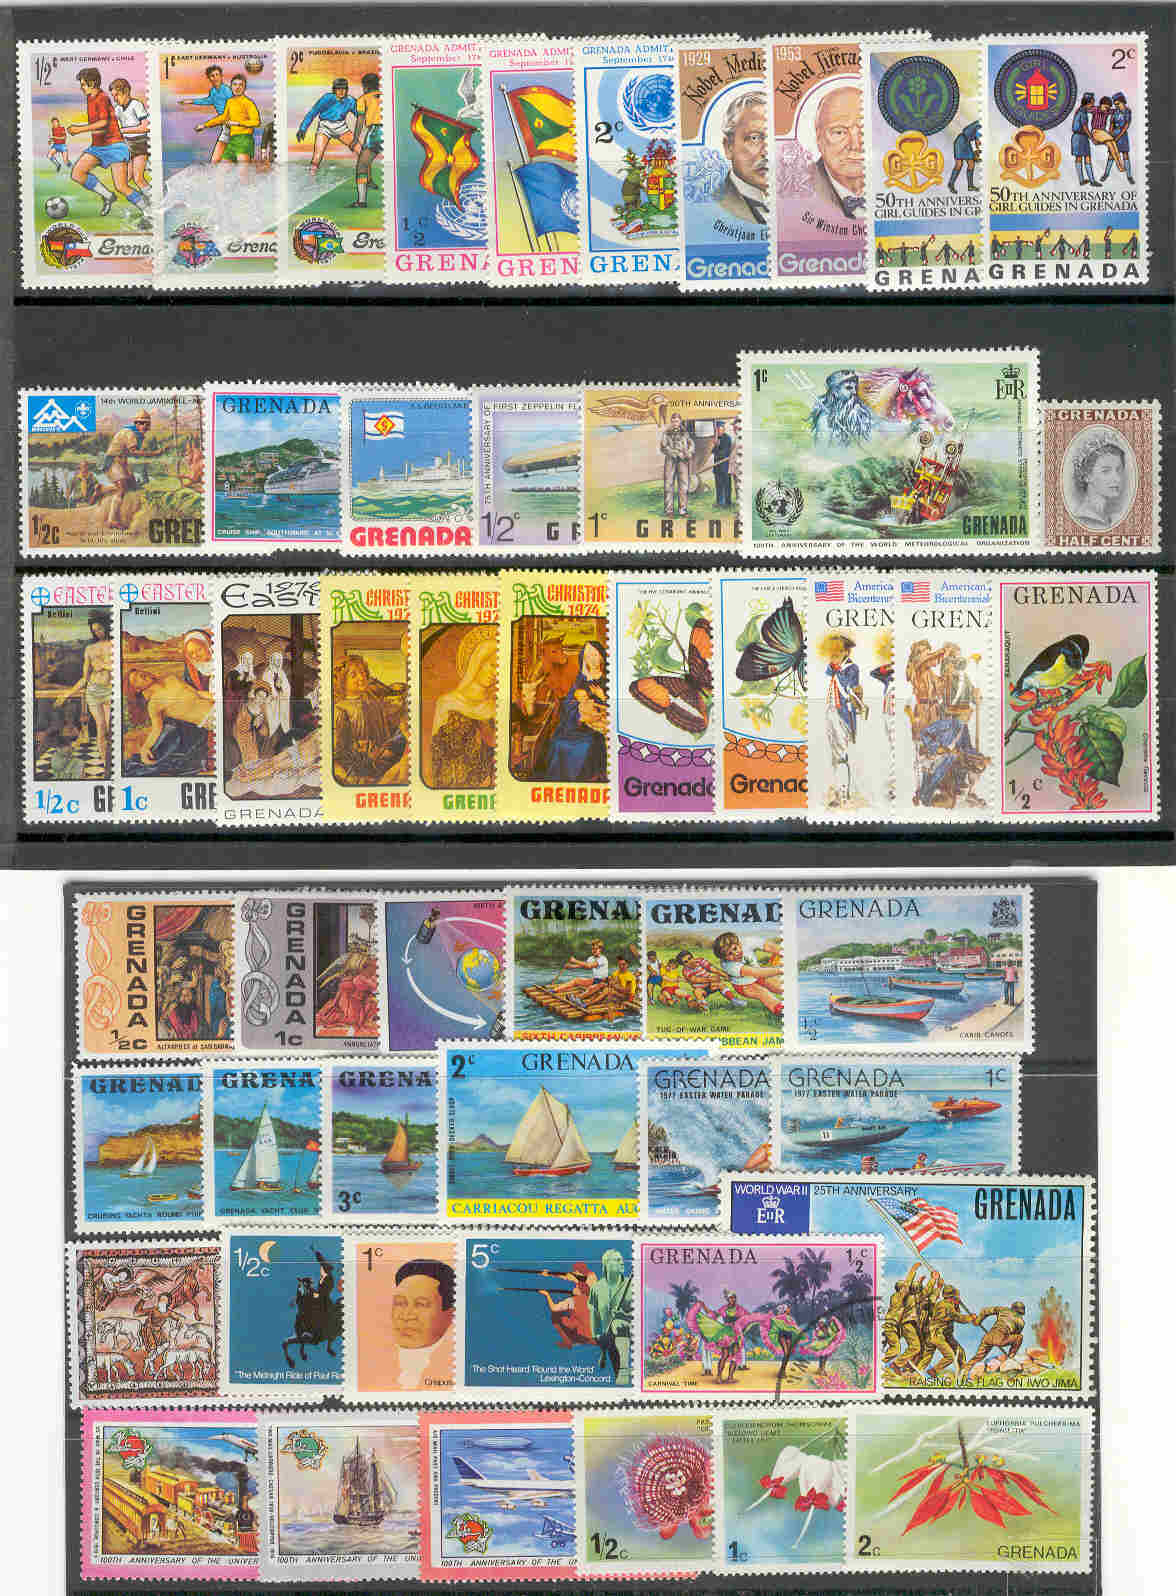 10050 - Grenada - lotto di 73 francobolli differenti - non visibile per intero